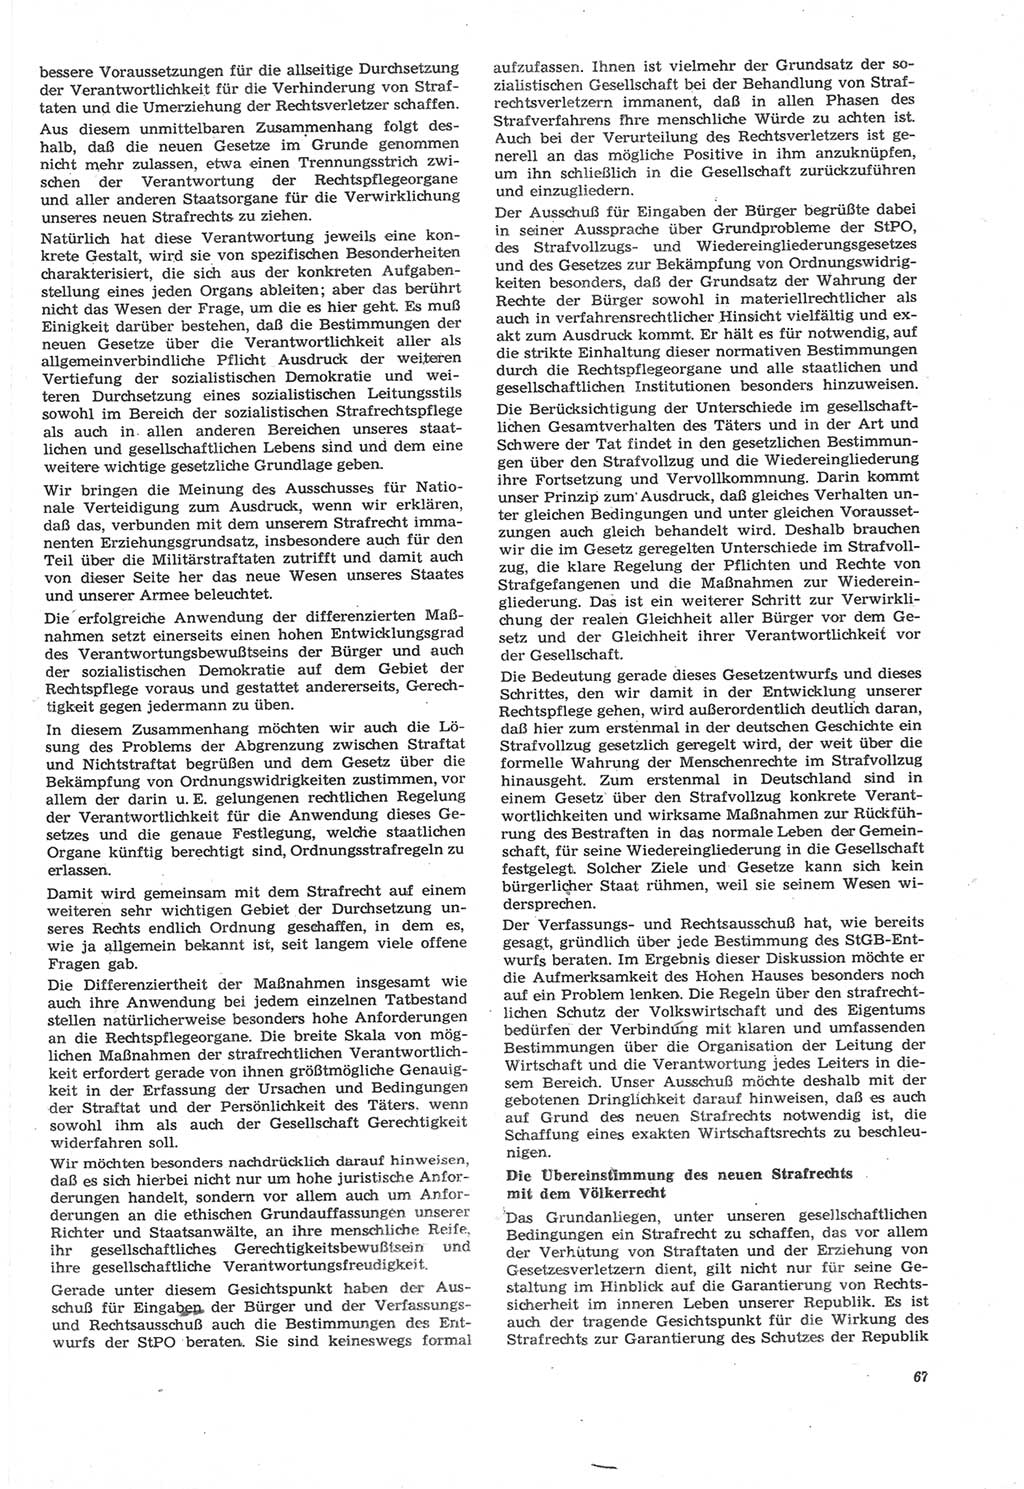 Neue Justiz (NJ), Zeitschrift für Recht und Rechtswissenschaft [Deutsche Demokratische Republik (DDR)], 22. Jahrgang 1968, Seite 67 (NJ DDR 1968, S. 67)